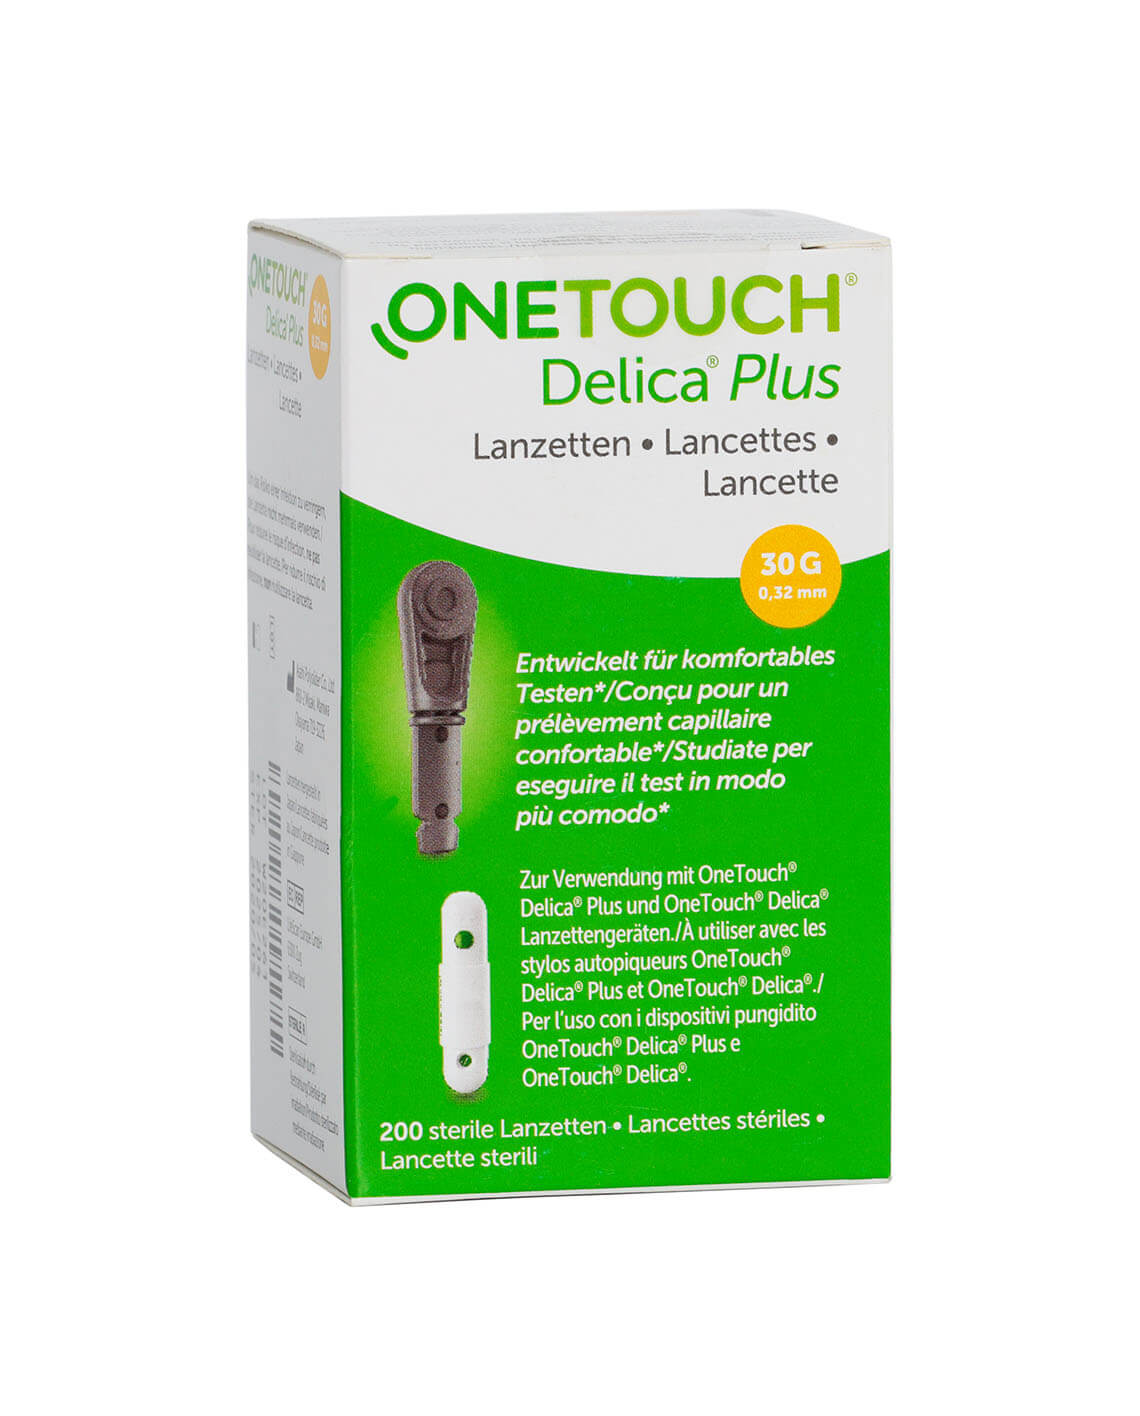 One touch Delica Plus lancetten (100 st)